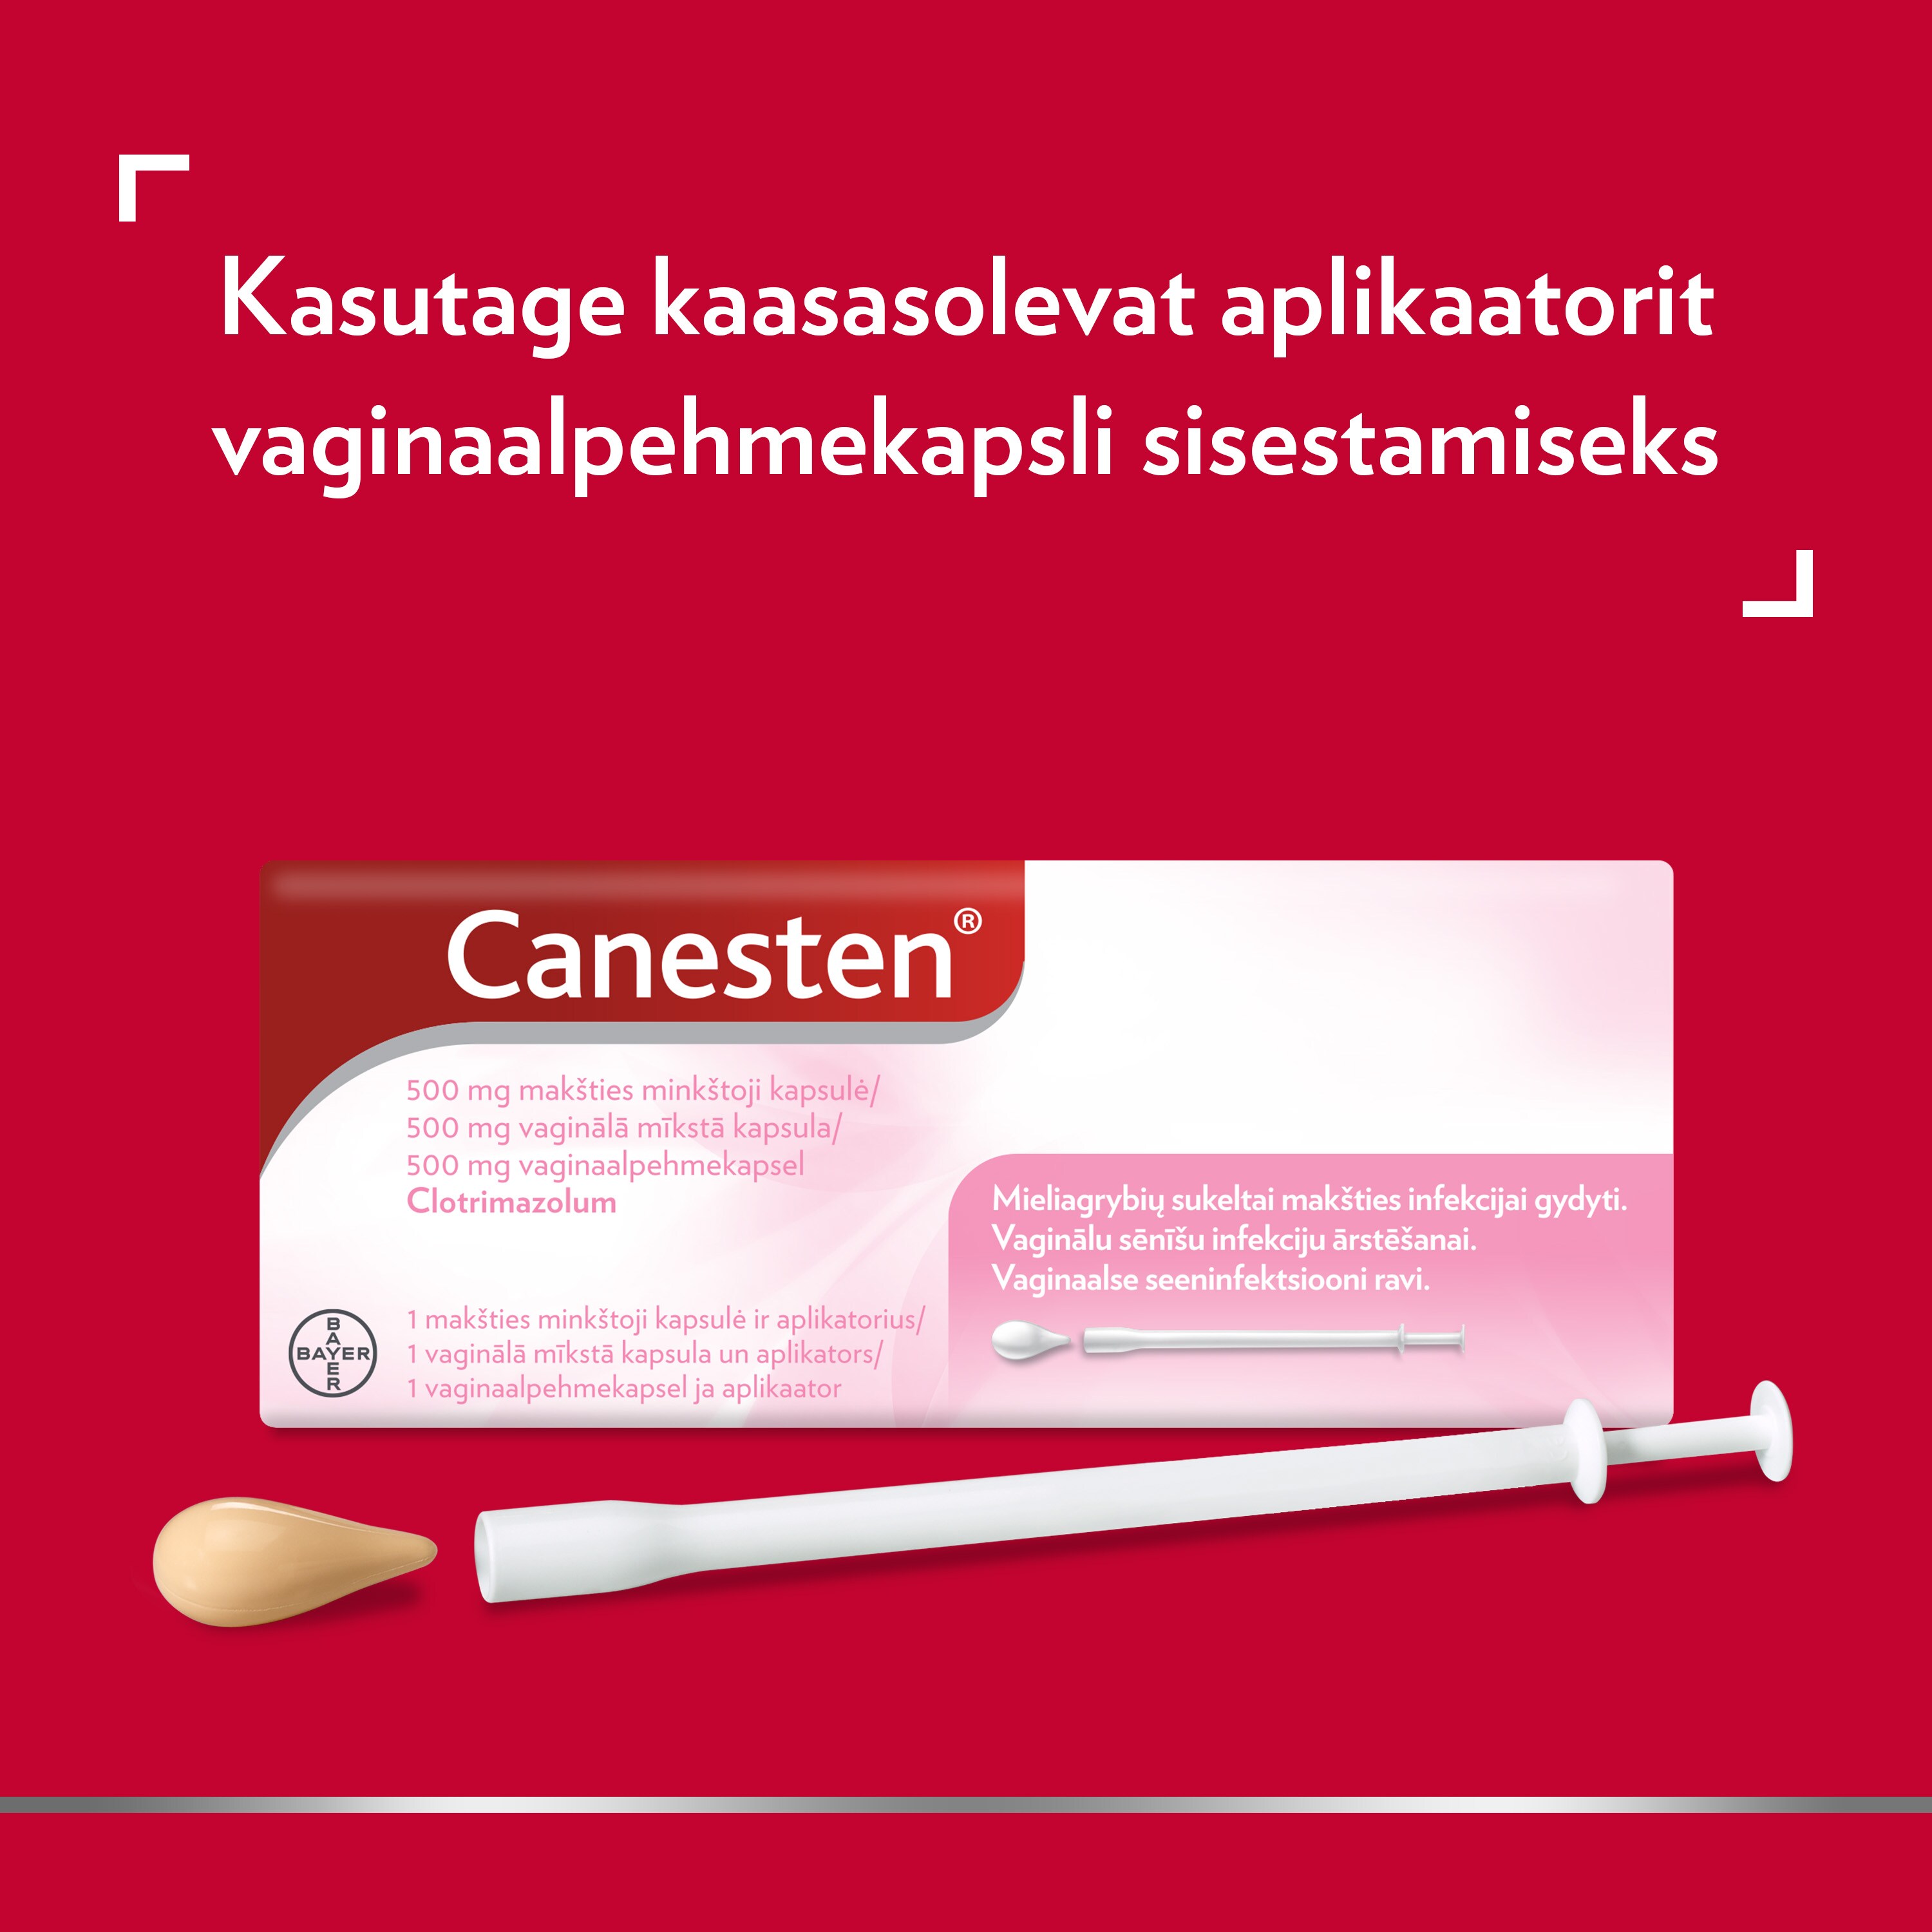 Canesteni (klotrimasool) 500 mg vaginaalpehmekapsel koos aplikaatoriga.